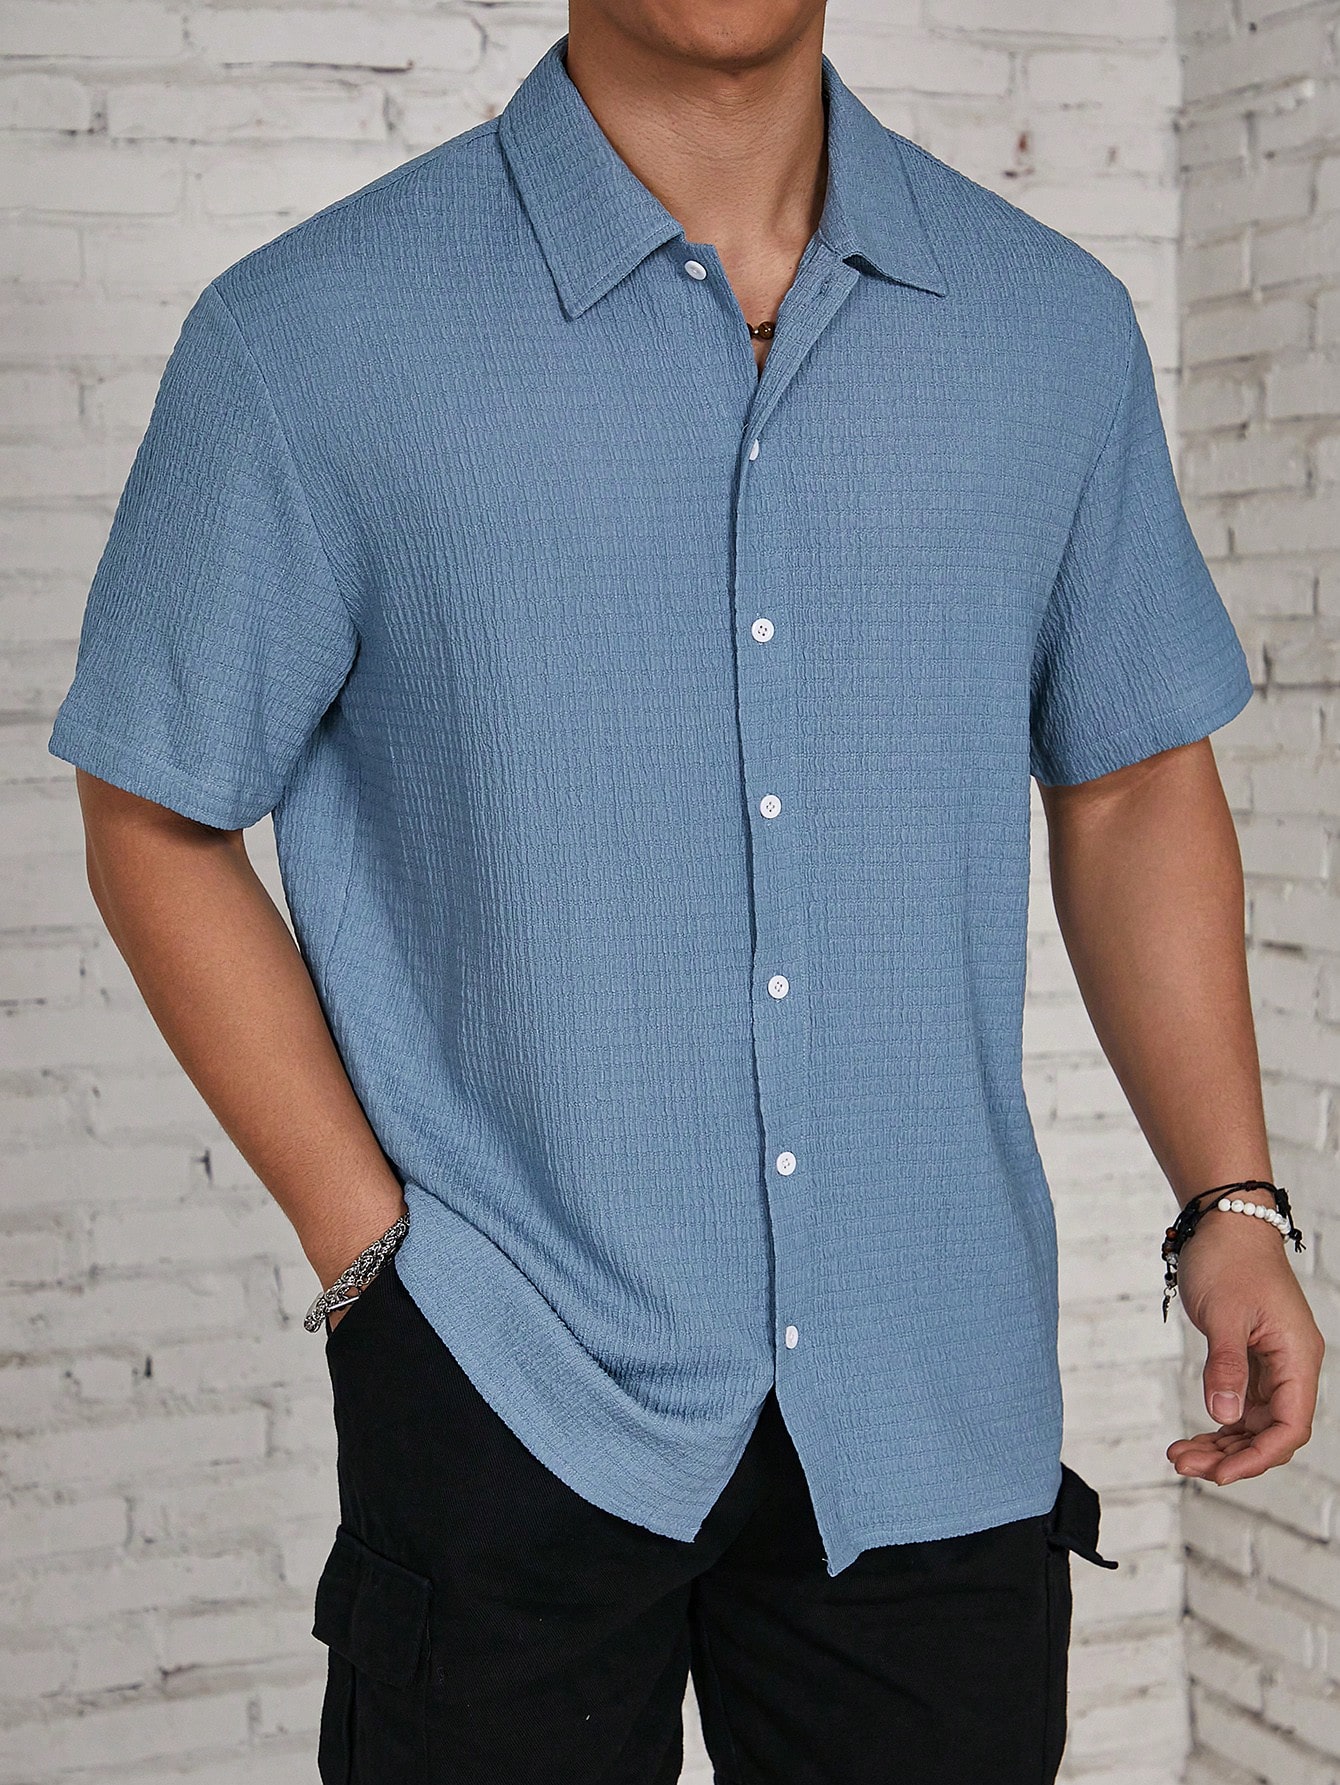 Мужская текстурированная рубашка на пуговицах с коротким рукавом Manfinity Homme, синий мужская текстурированная рубашка с коротким рукавом manfinity homme на пуговицах спереди розовый